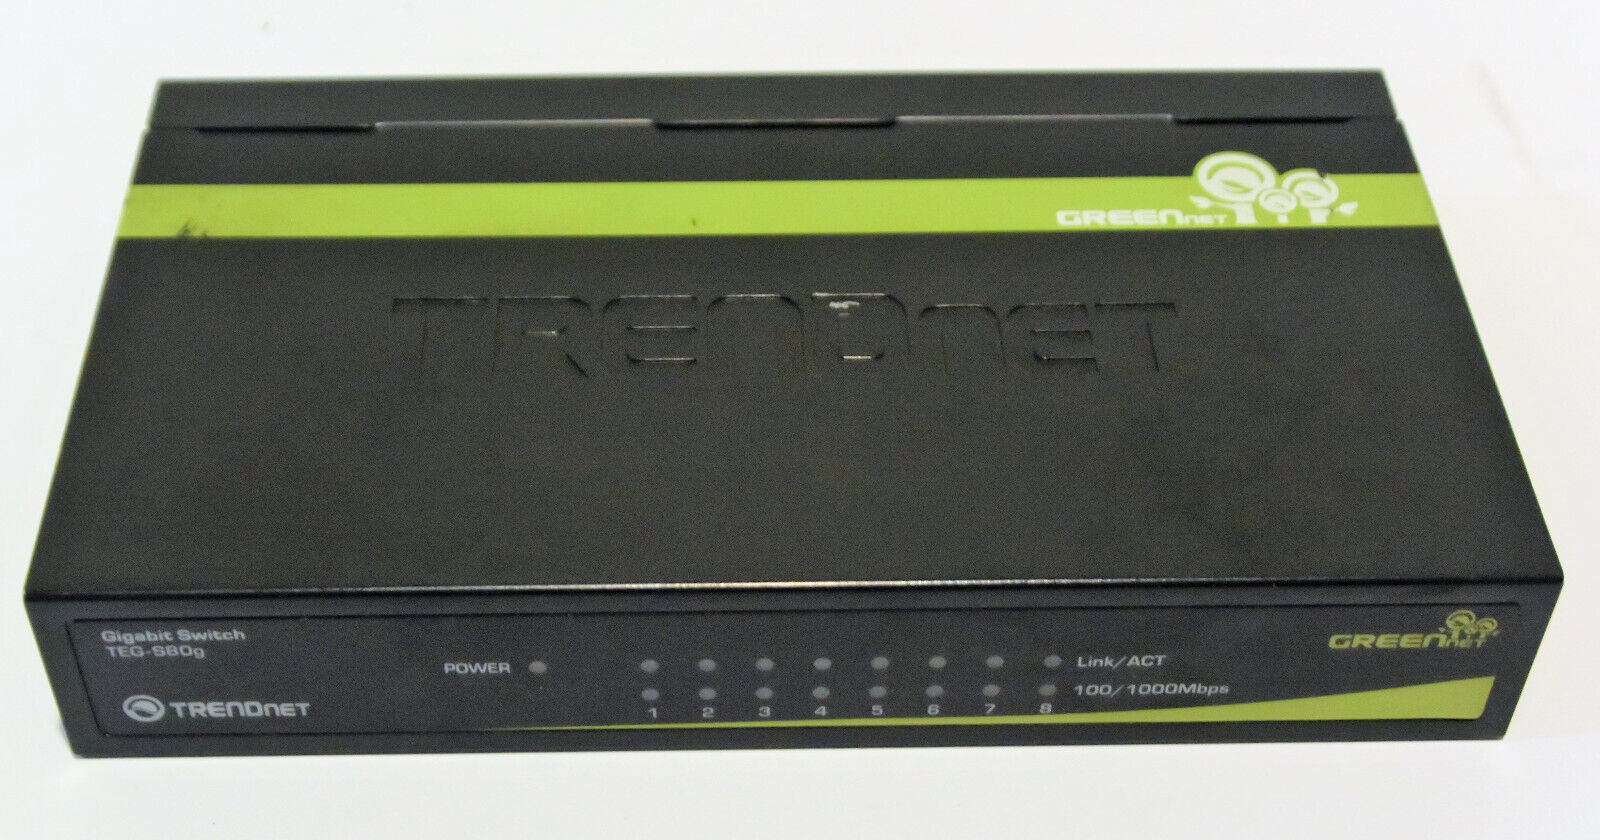 TRENDnet TEG TEG-S80g External Switch Gigabit 8-Port